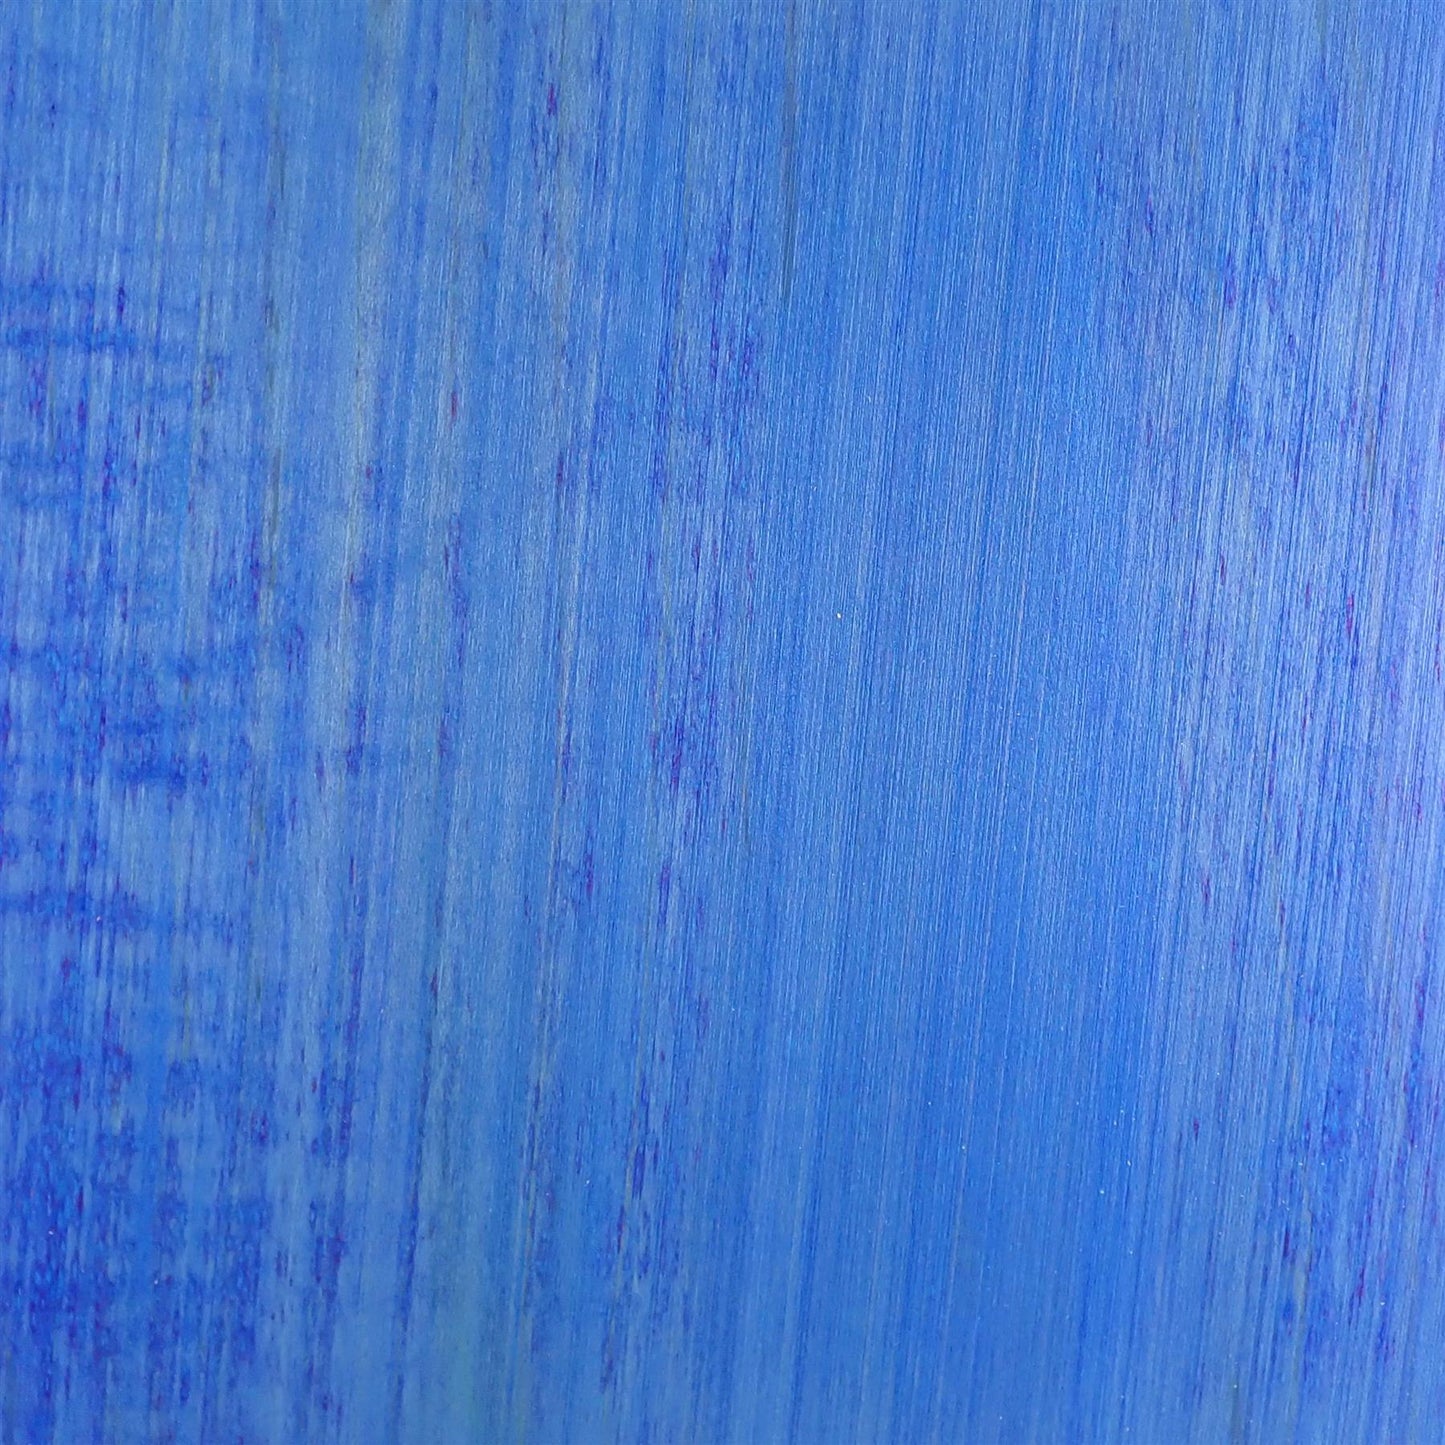 dartfords Blue Alcohol Soluble Aniline Wood Dye Powder - 28g 1Oz